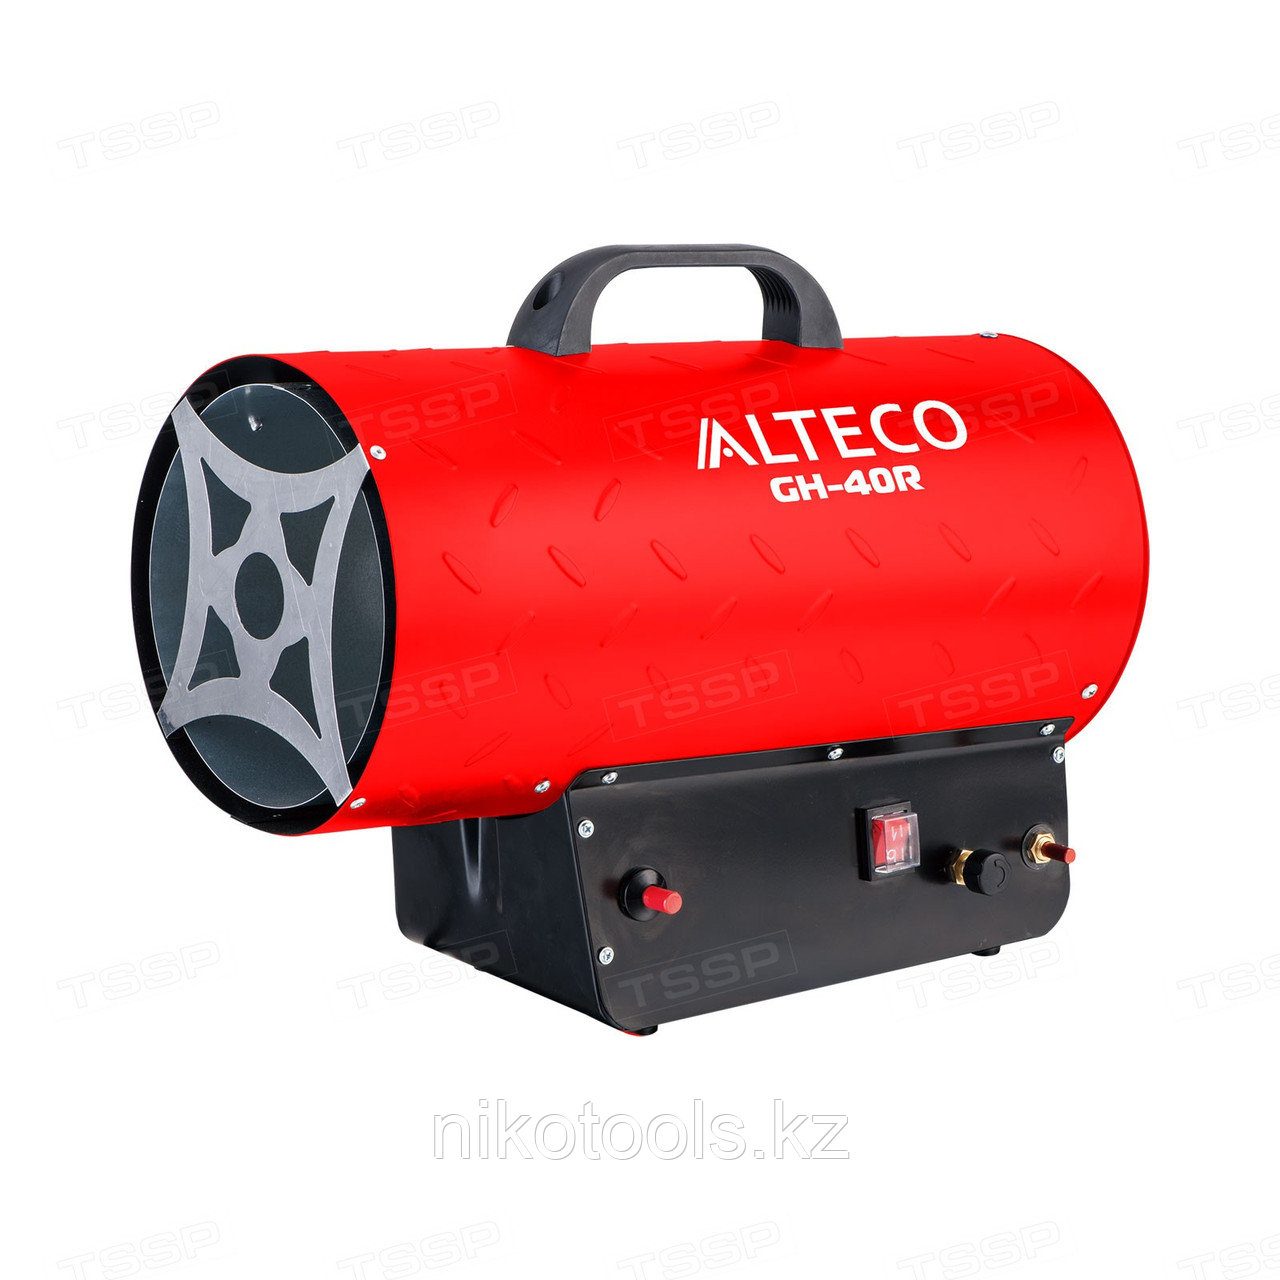 Нагреватель газовый Alteco GH-40R